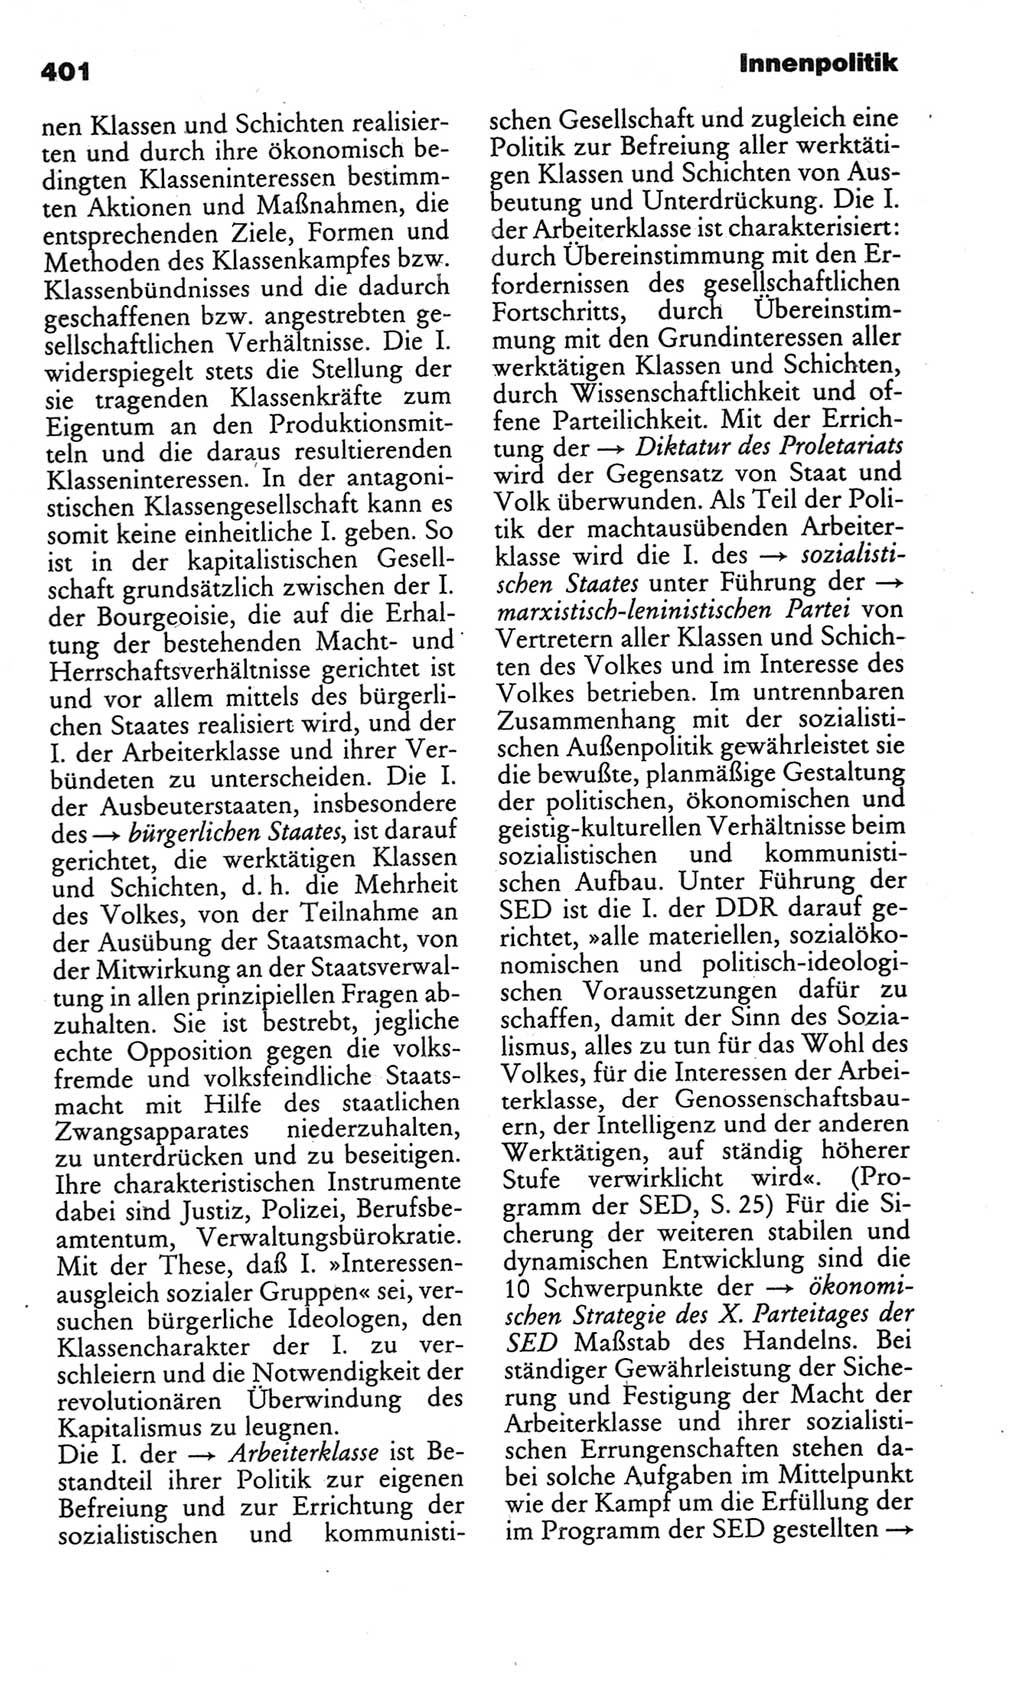 Kleines politisches Wörterbuch [Deutsche Demokratische Republik (DDR)] 1986, Seite 401 (Kl. pol. Wb. DDR 1986, S. 401)